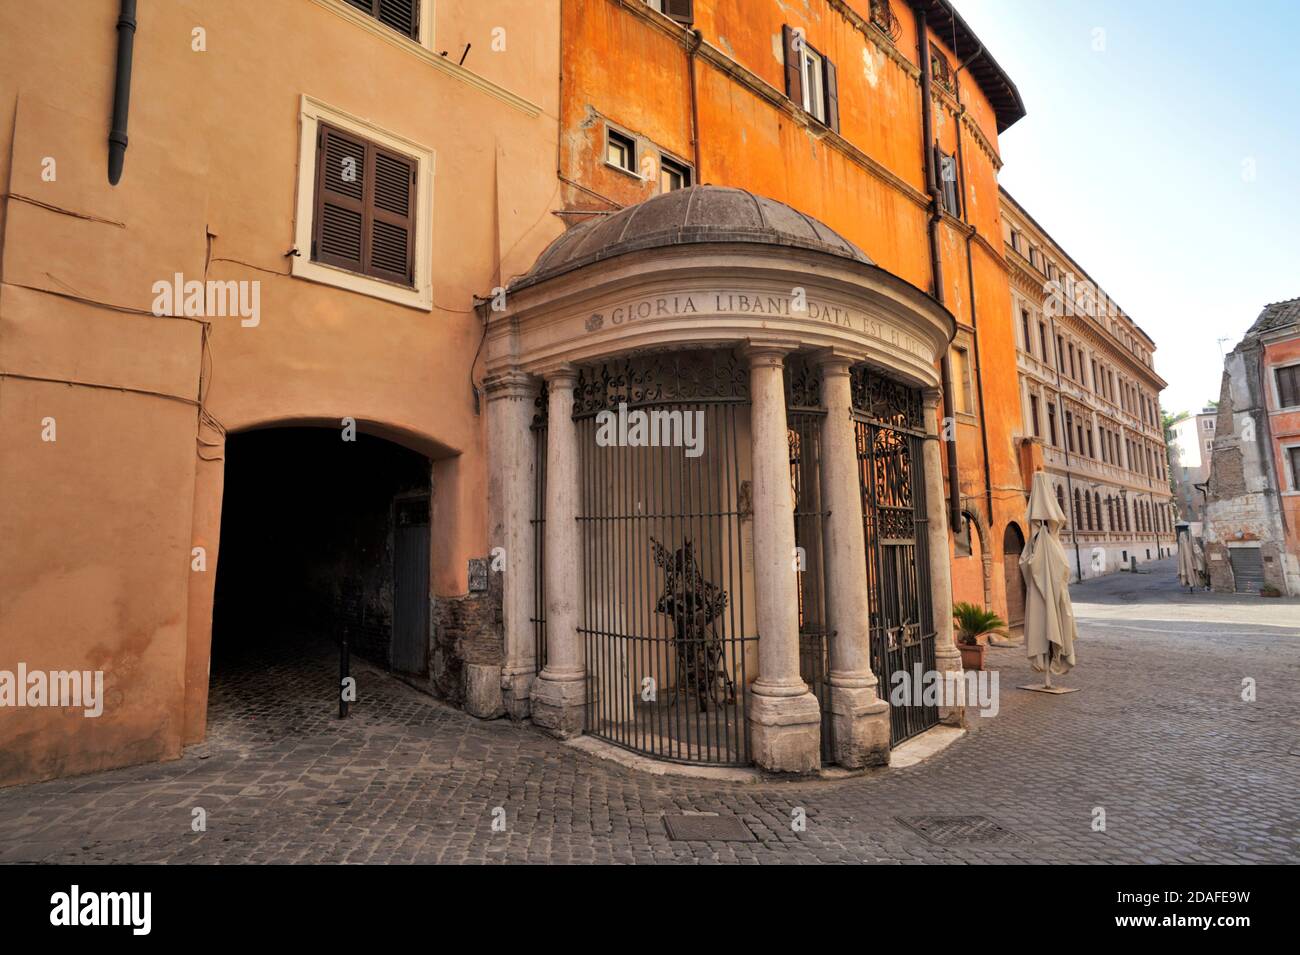 tempietto del carmelo, piazza costaguti, jewish ghetto, rome, italy Stock Photo